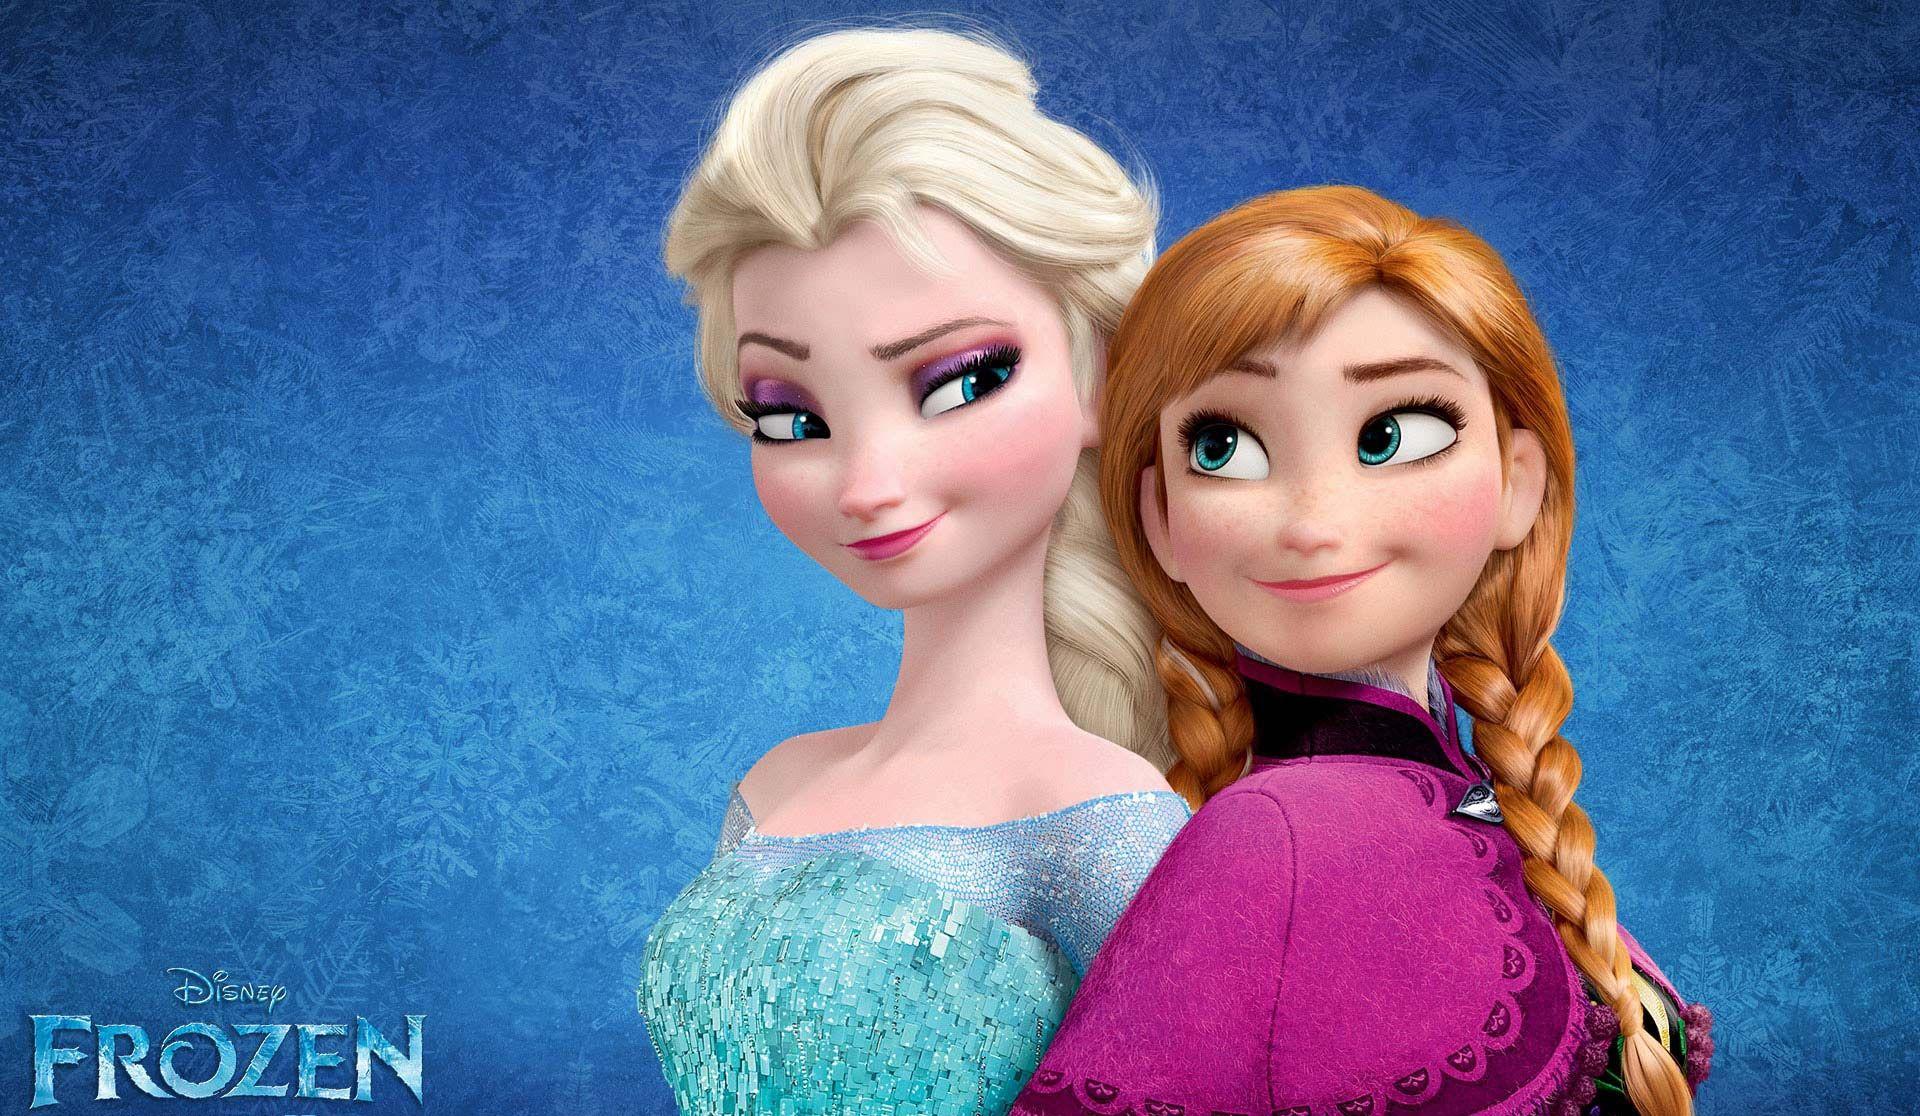 Disney Frozen Movie Anna Elsa Cartoon Full HD Wallpaper Image